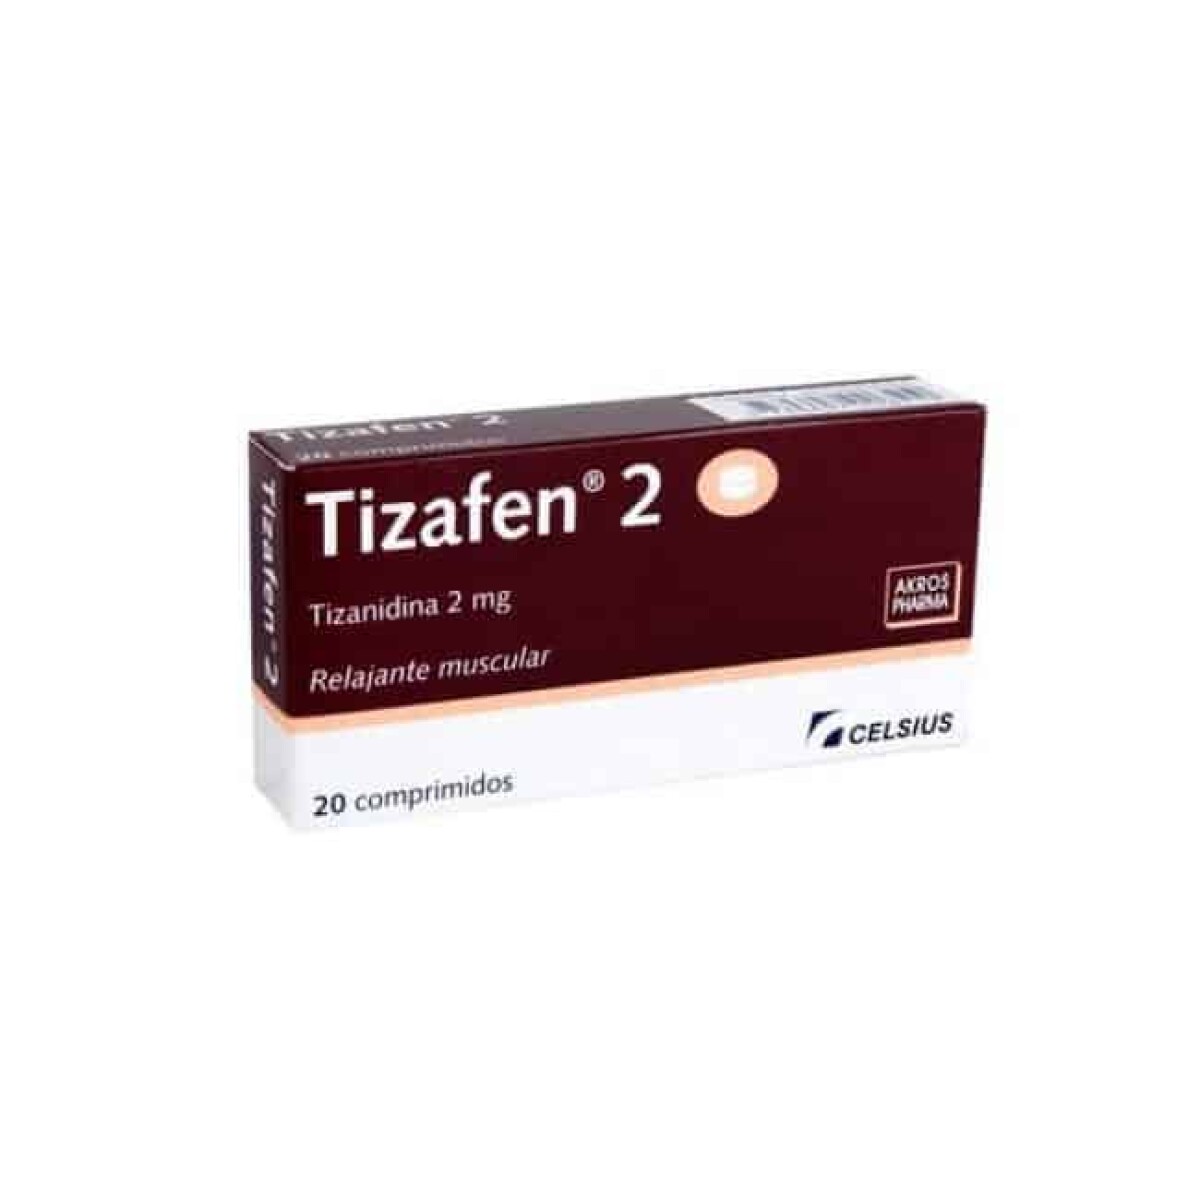 Tizafen 2 